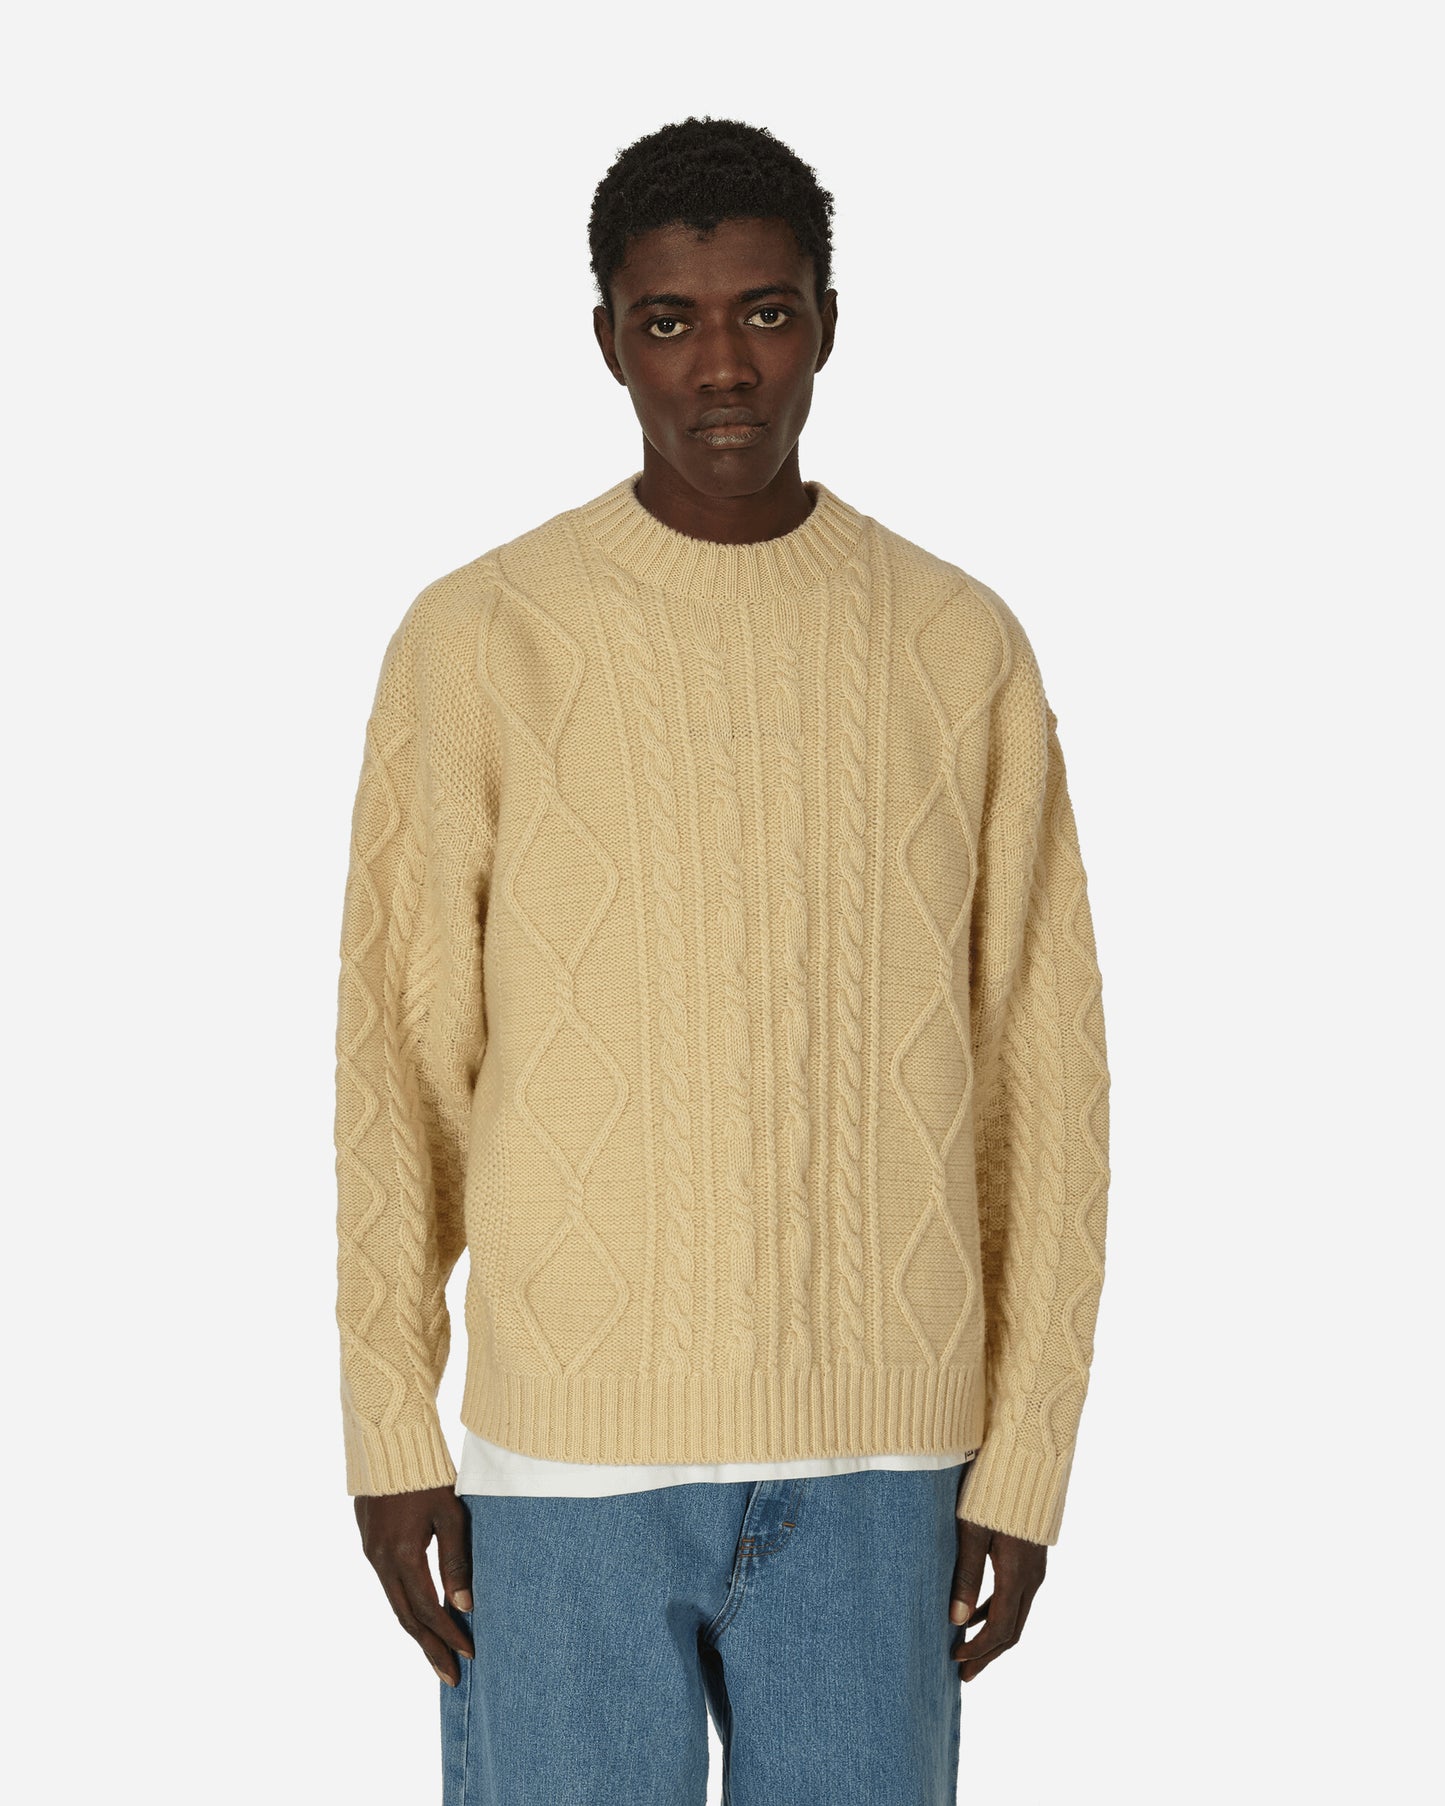 KAPITAL 5G Wool Cable Knit Profile Rainbowy Patch Sweater Ecru Knitwears Sweaters EK-1517 1